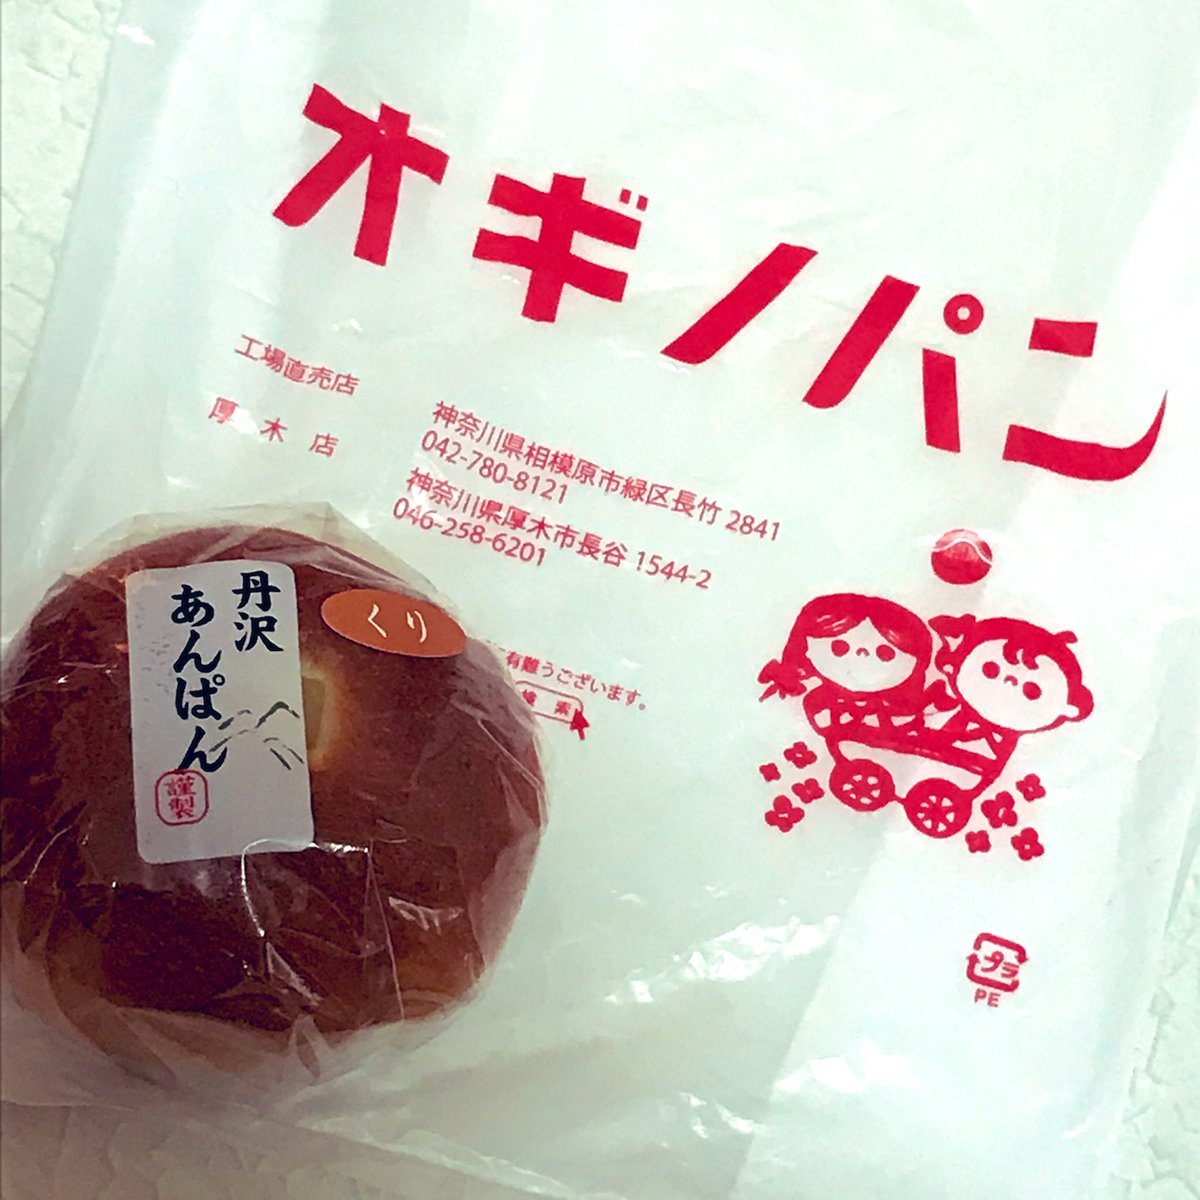 新宿駅で出張販売してた、初オギノパン!丹沢あんぱん美味しかったです(*'꒳`*)
袋もかわいかったから付けてもらっちゃった。かわいい。 